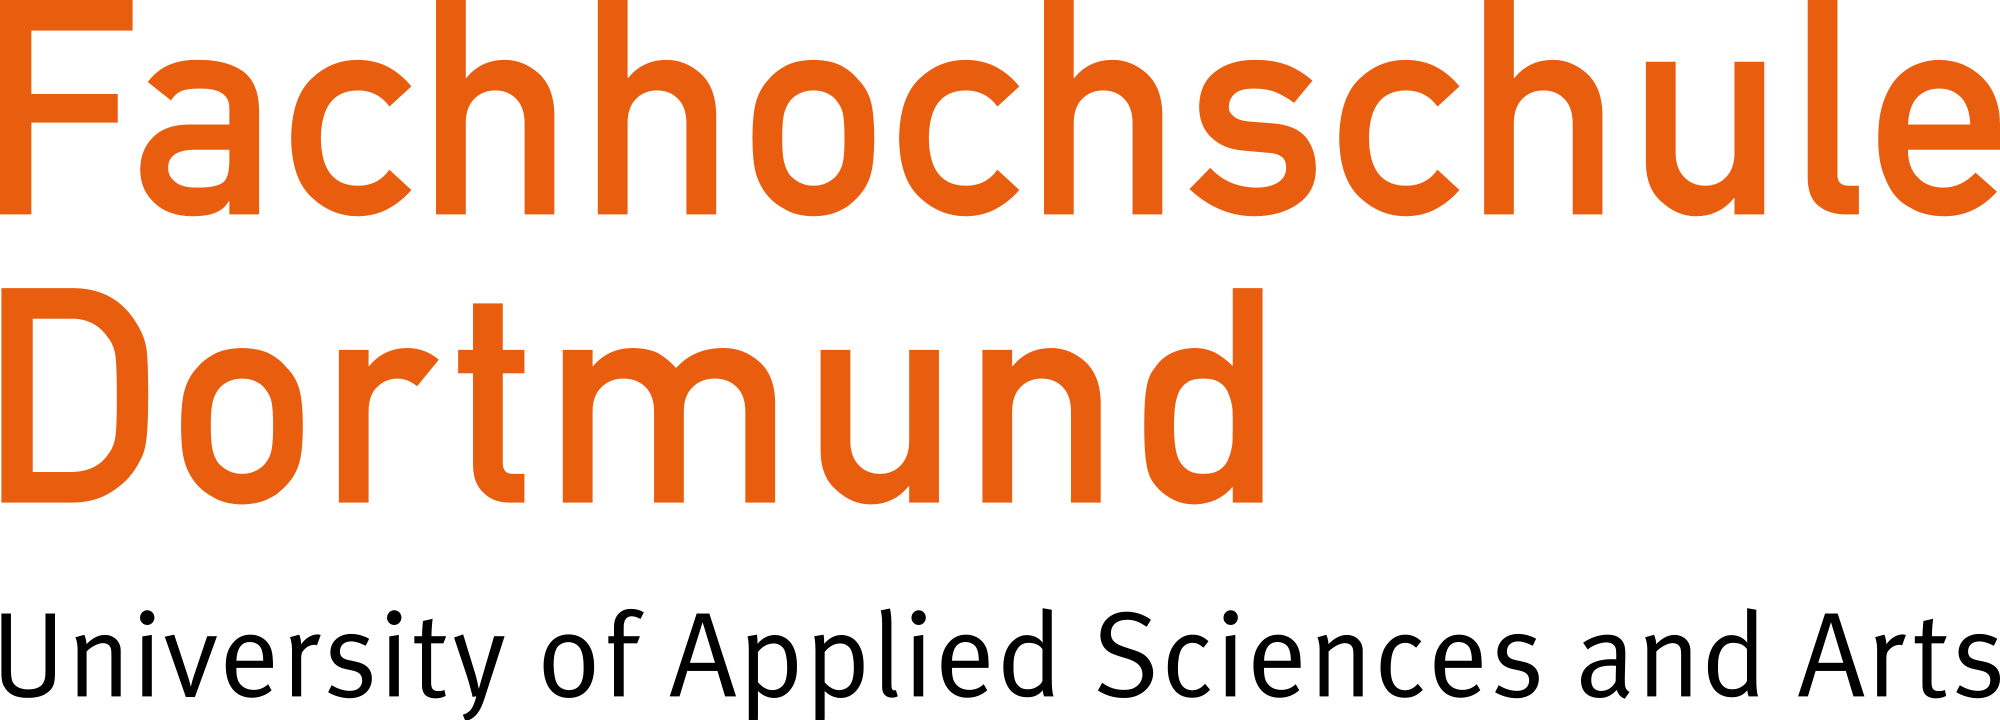 Zu sehen ist das Logo der Fachhochschule Dortmund.